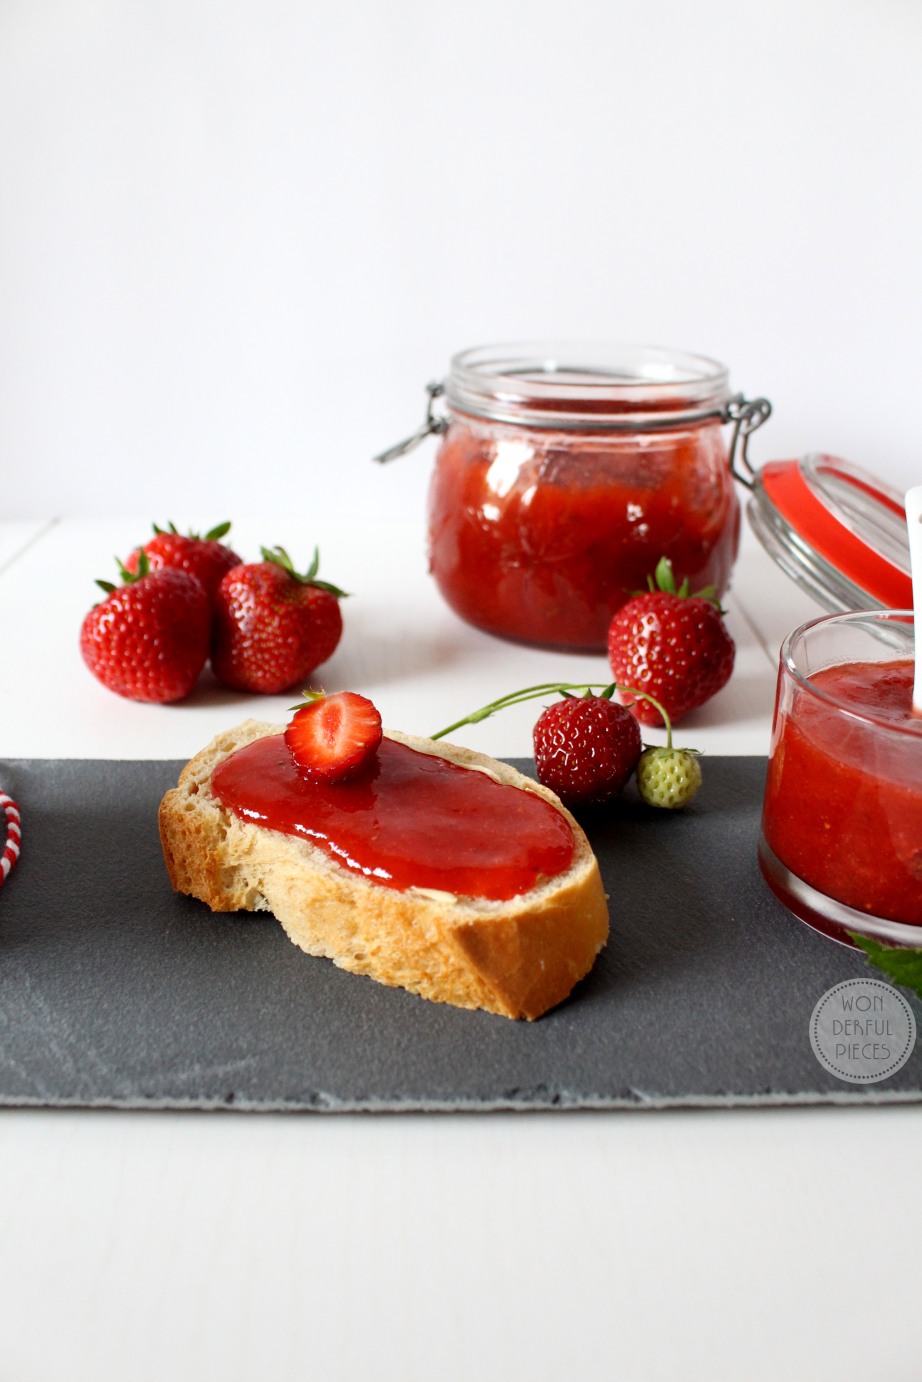 Erdbeer-Rhabarber-Marmelade mit Frischekick - wonderful pieces